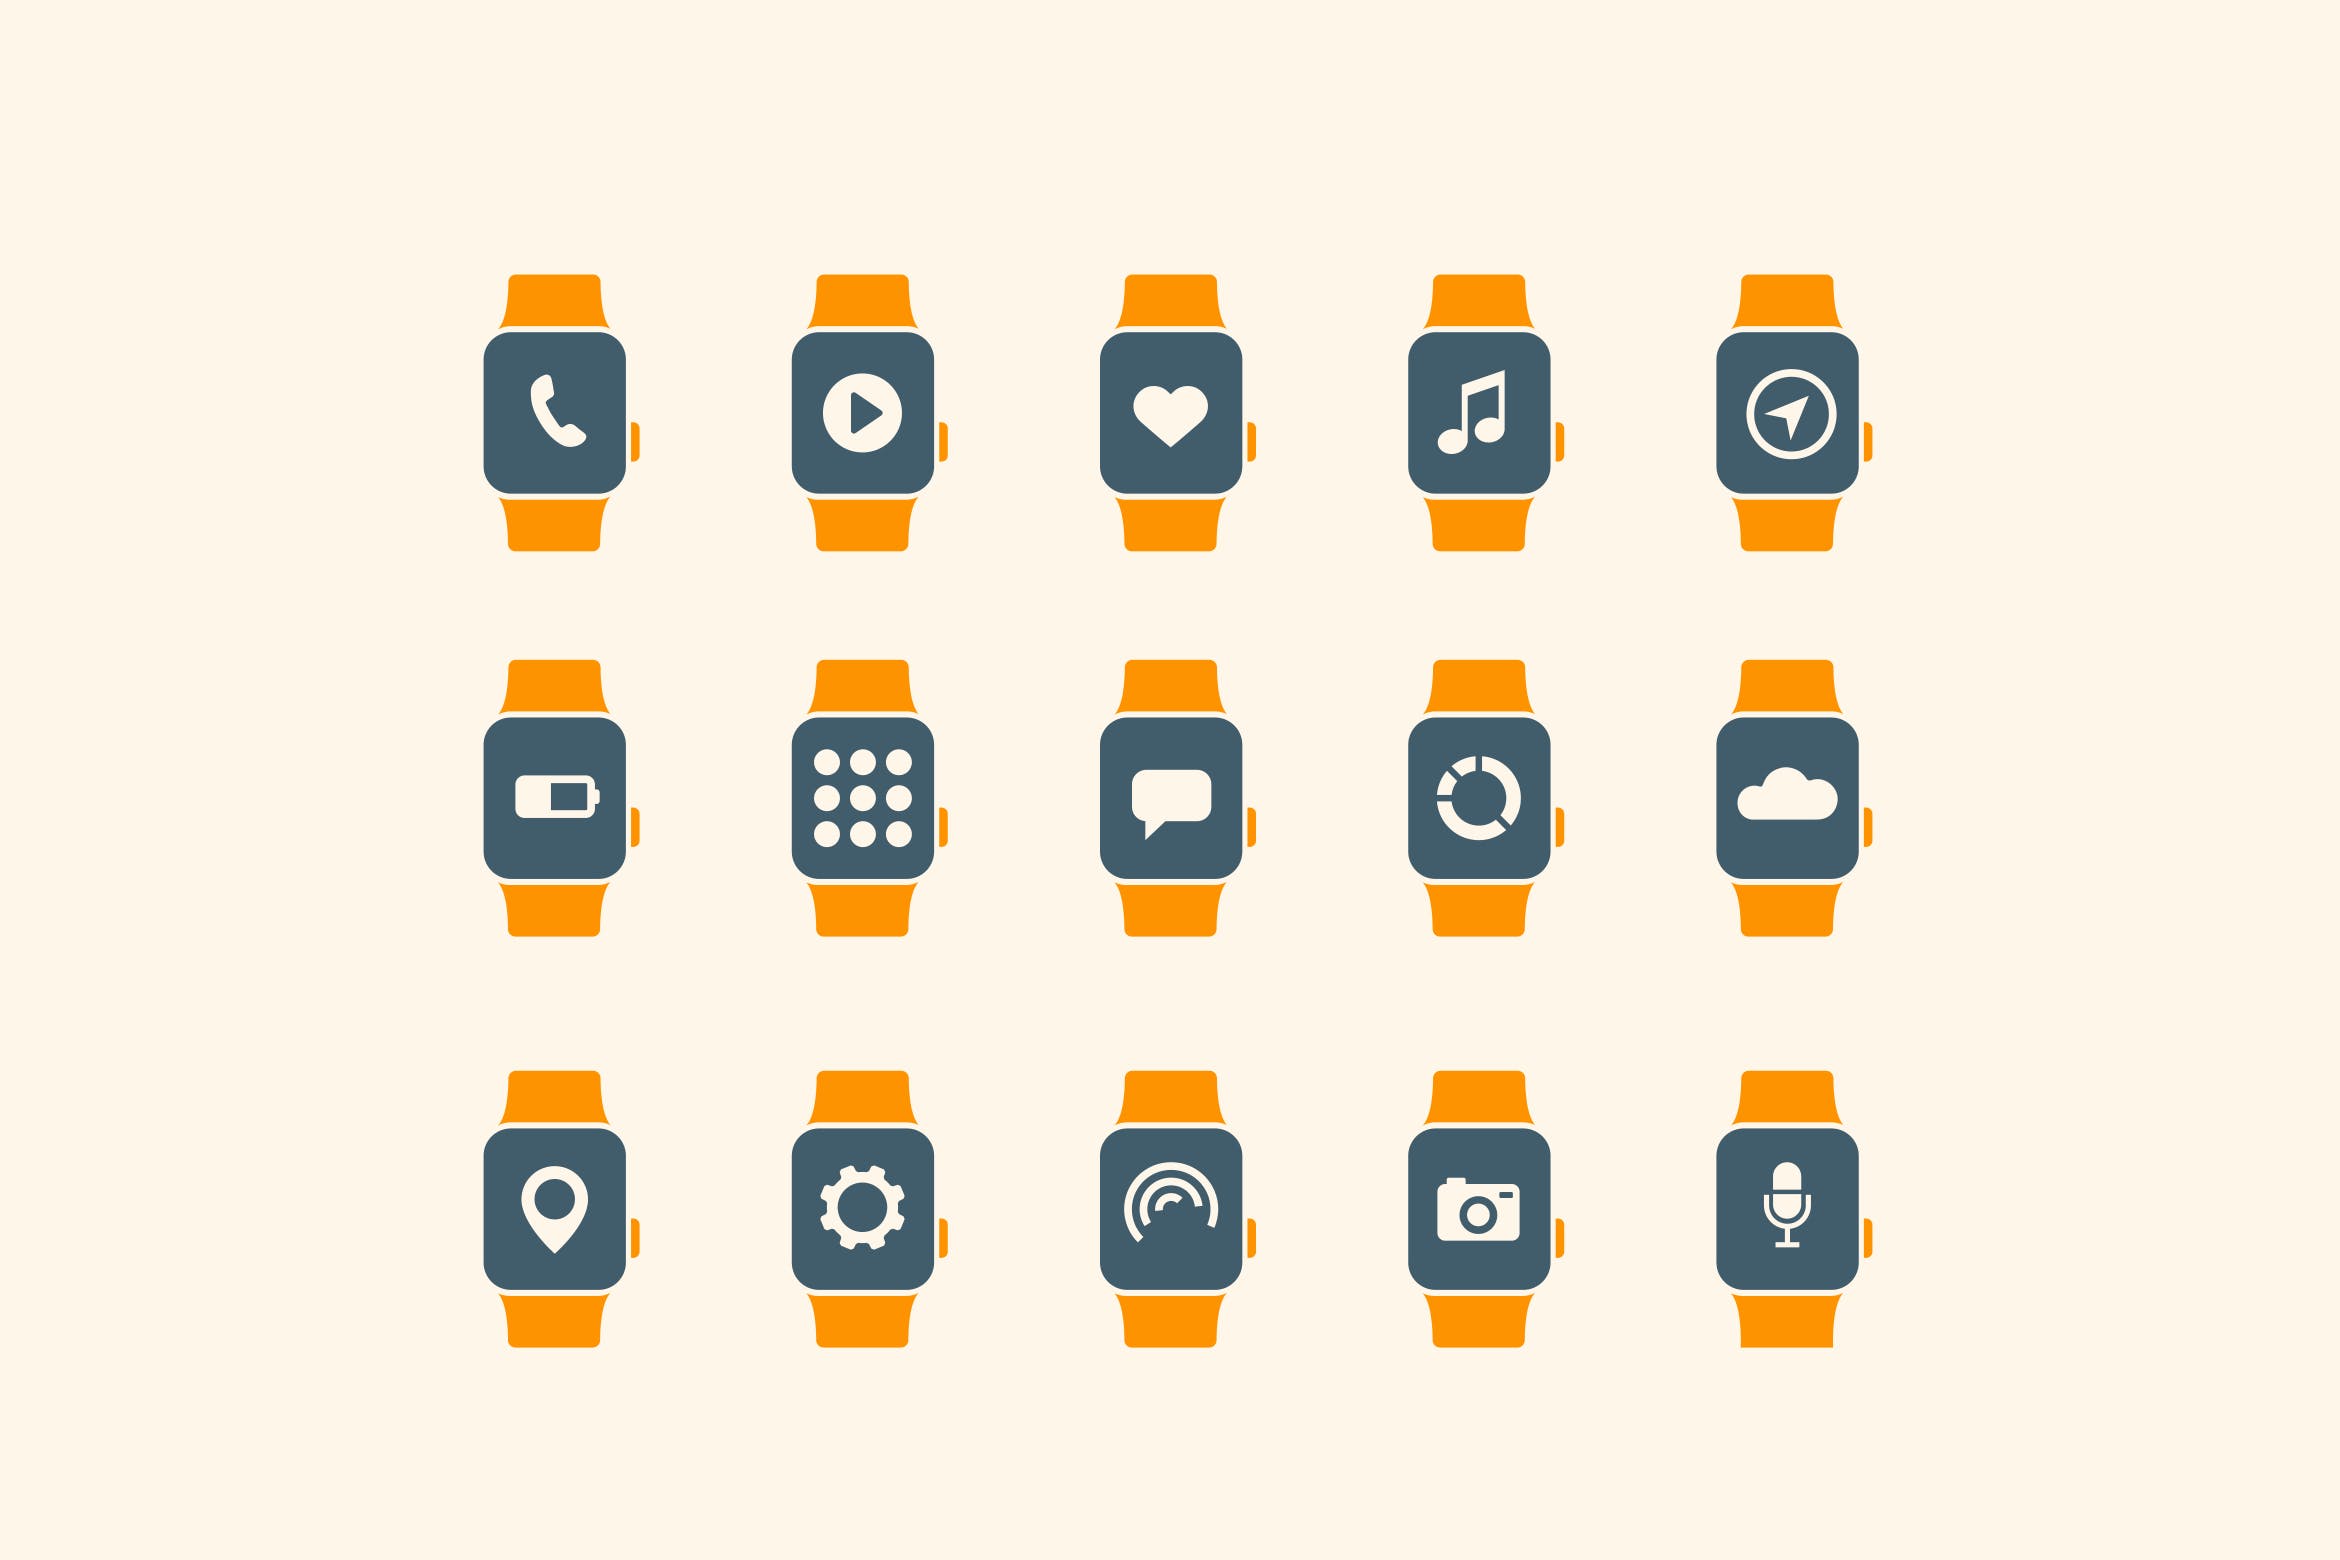 15枚智能手表APP应用主题矢量蚂蚁素材精选图标 15 Smart Watch App Icons插图